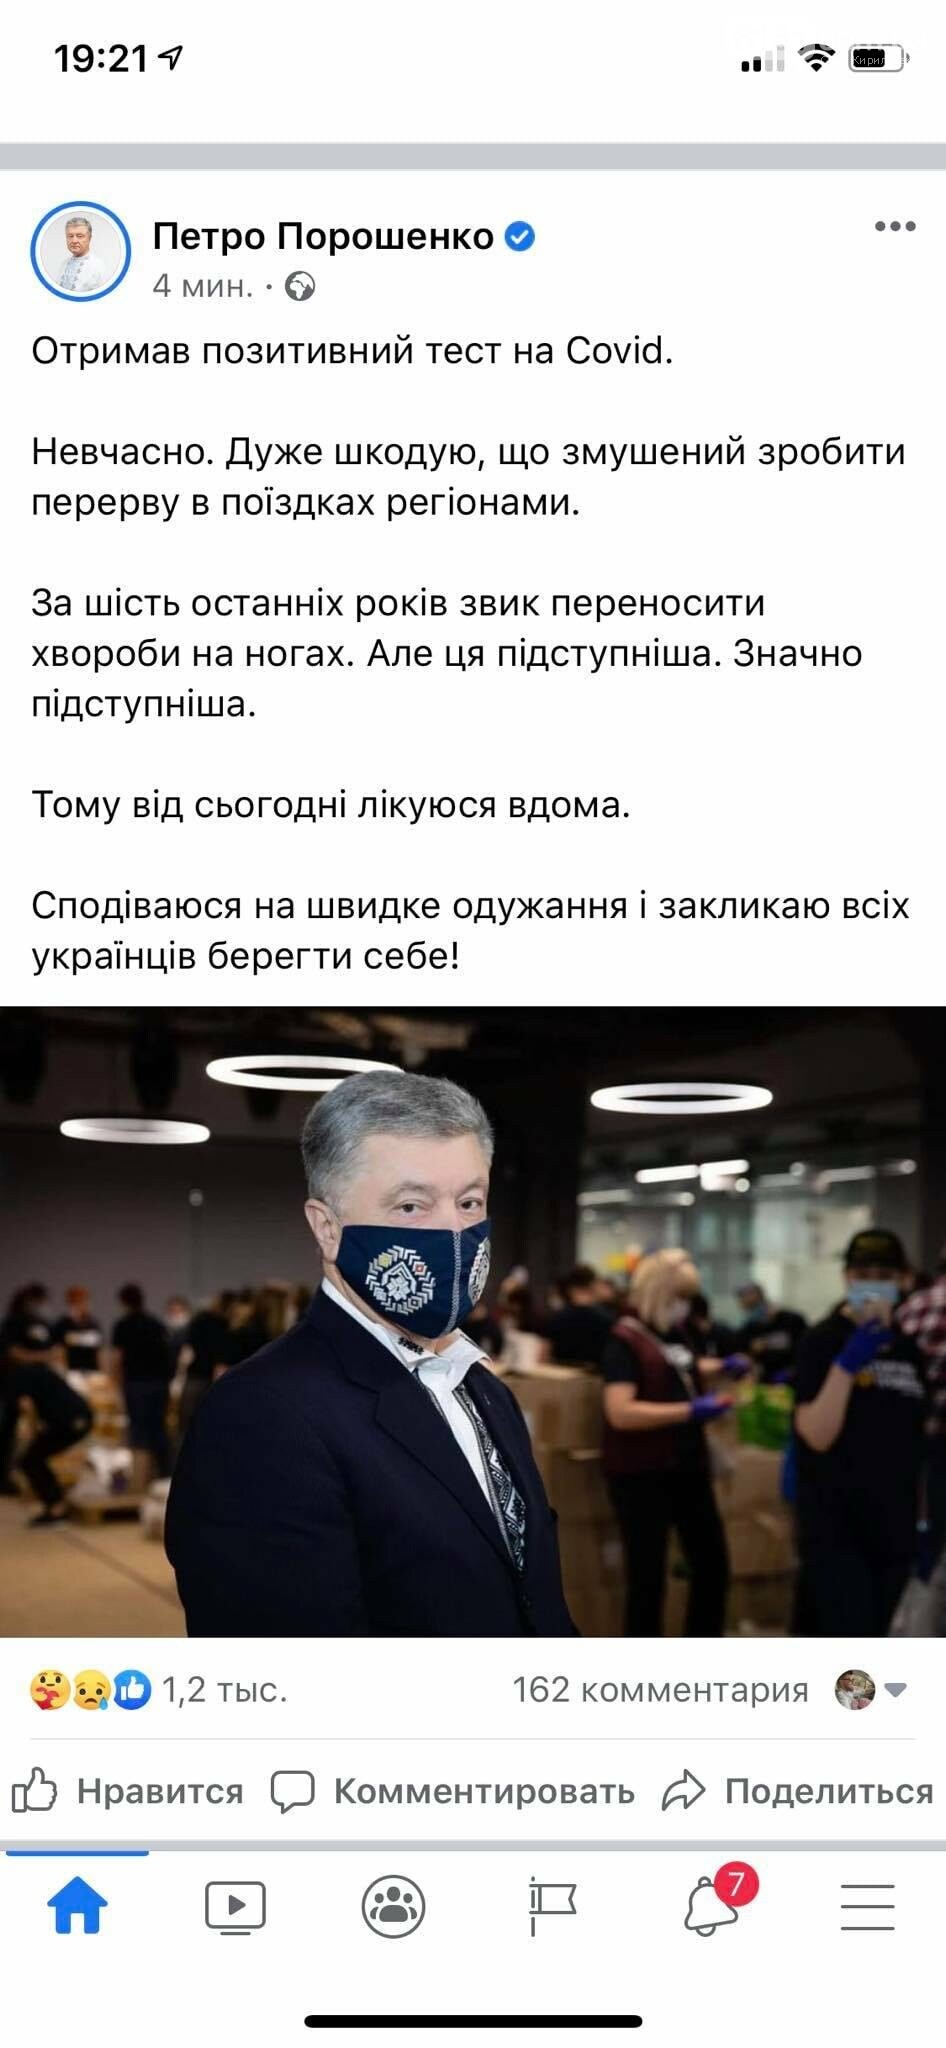 По собственному признанию в Facebook, Петр Порошенко заболел коронавирусом, фото-1